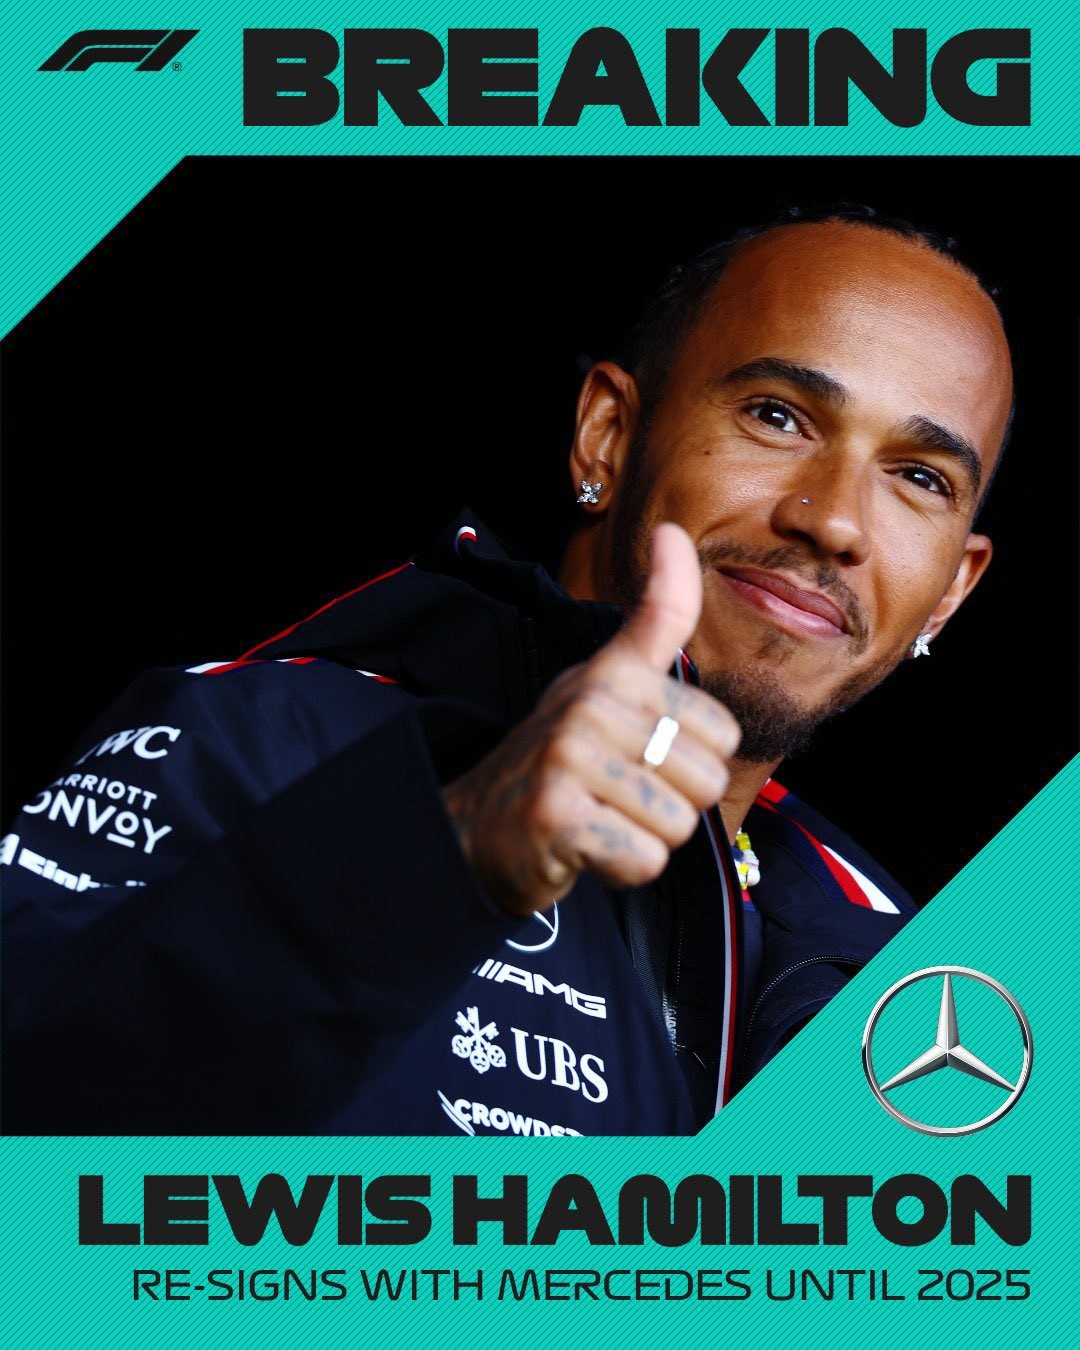 Louis Vuitton on X: Lewis Hamilton (@lewishamilton) entering the